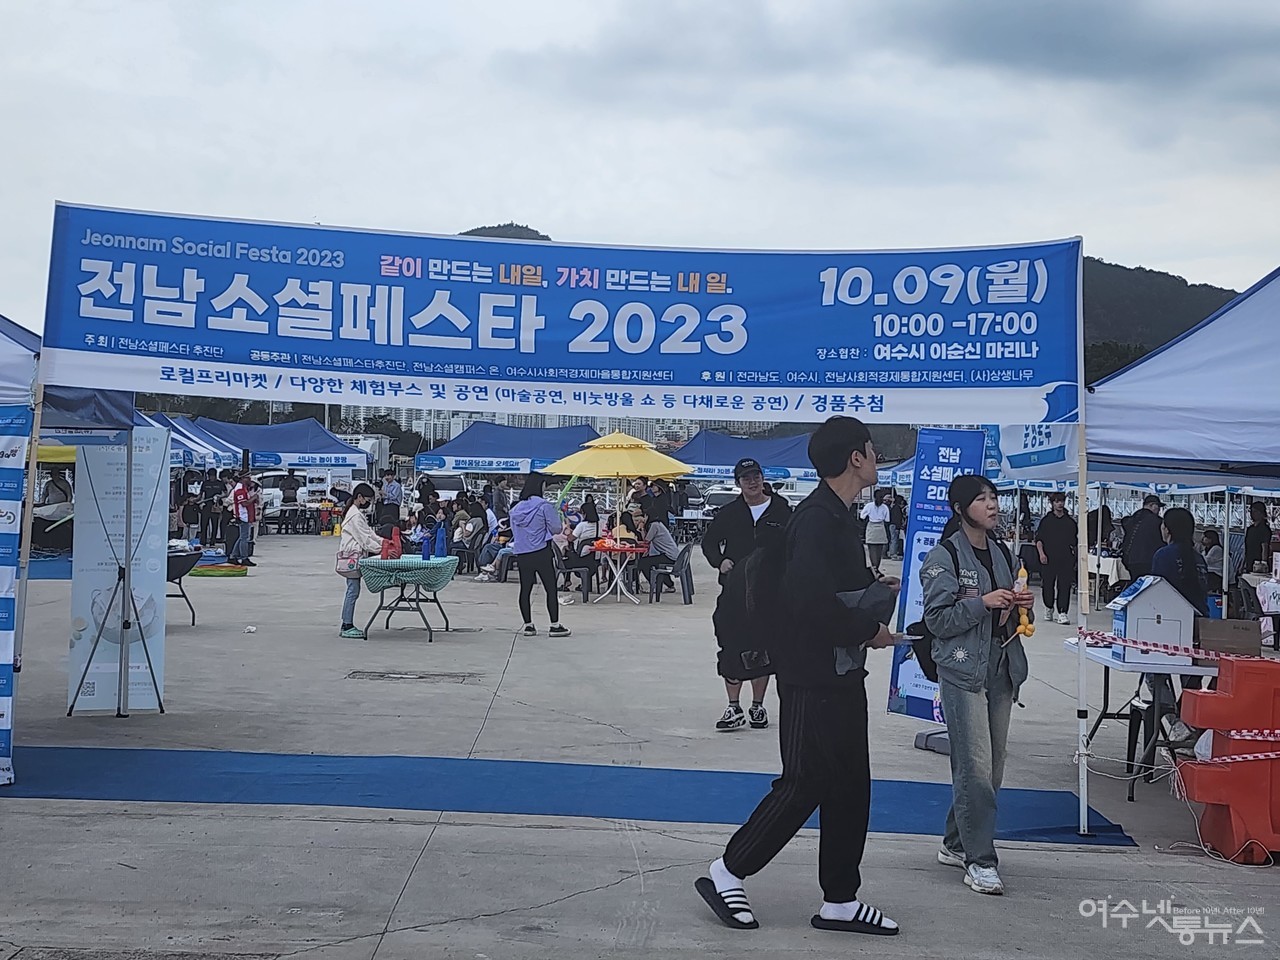 ▲ 9일 여수시 웅천 이순신마리나에서 열린 전남 소셜페스타 2023(Jeonnam Social Festa 2023) ⓒ심명남